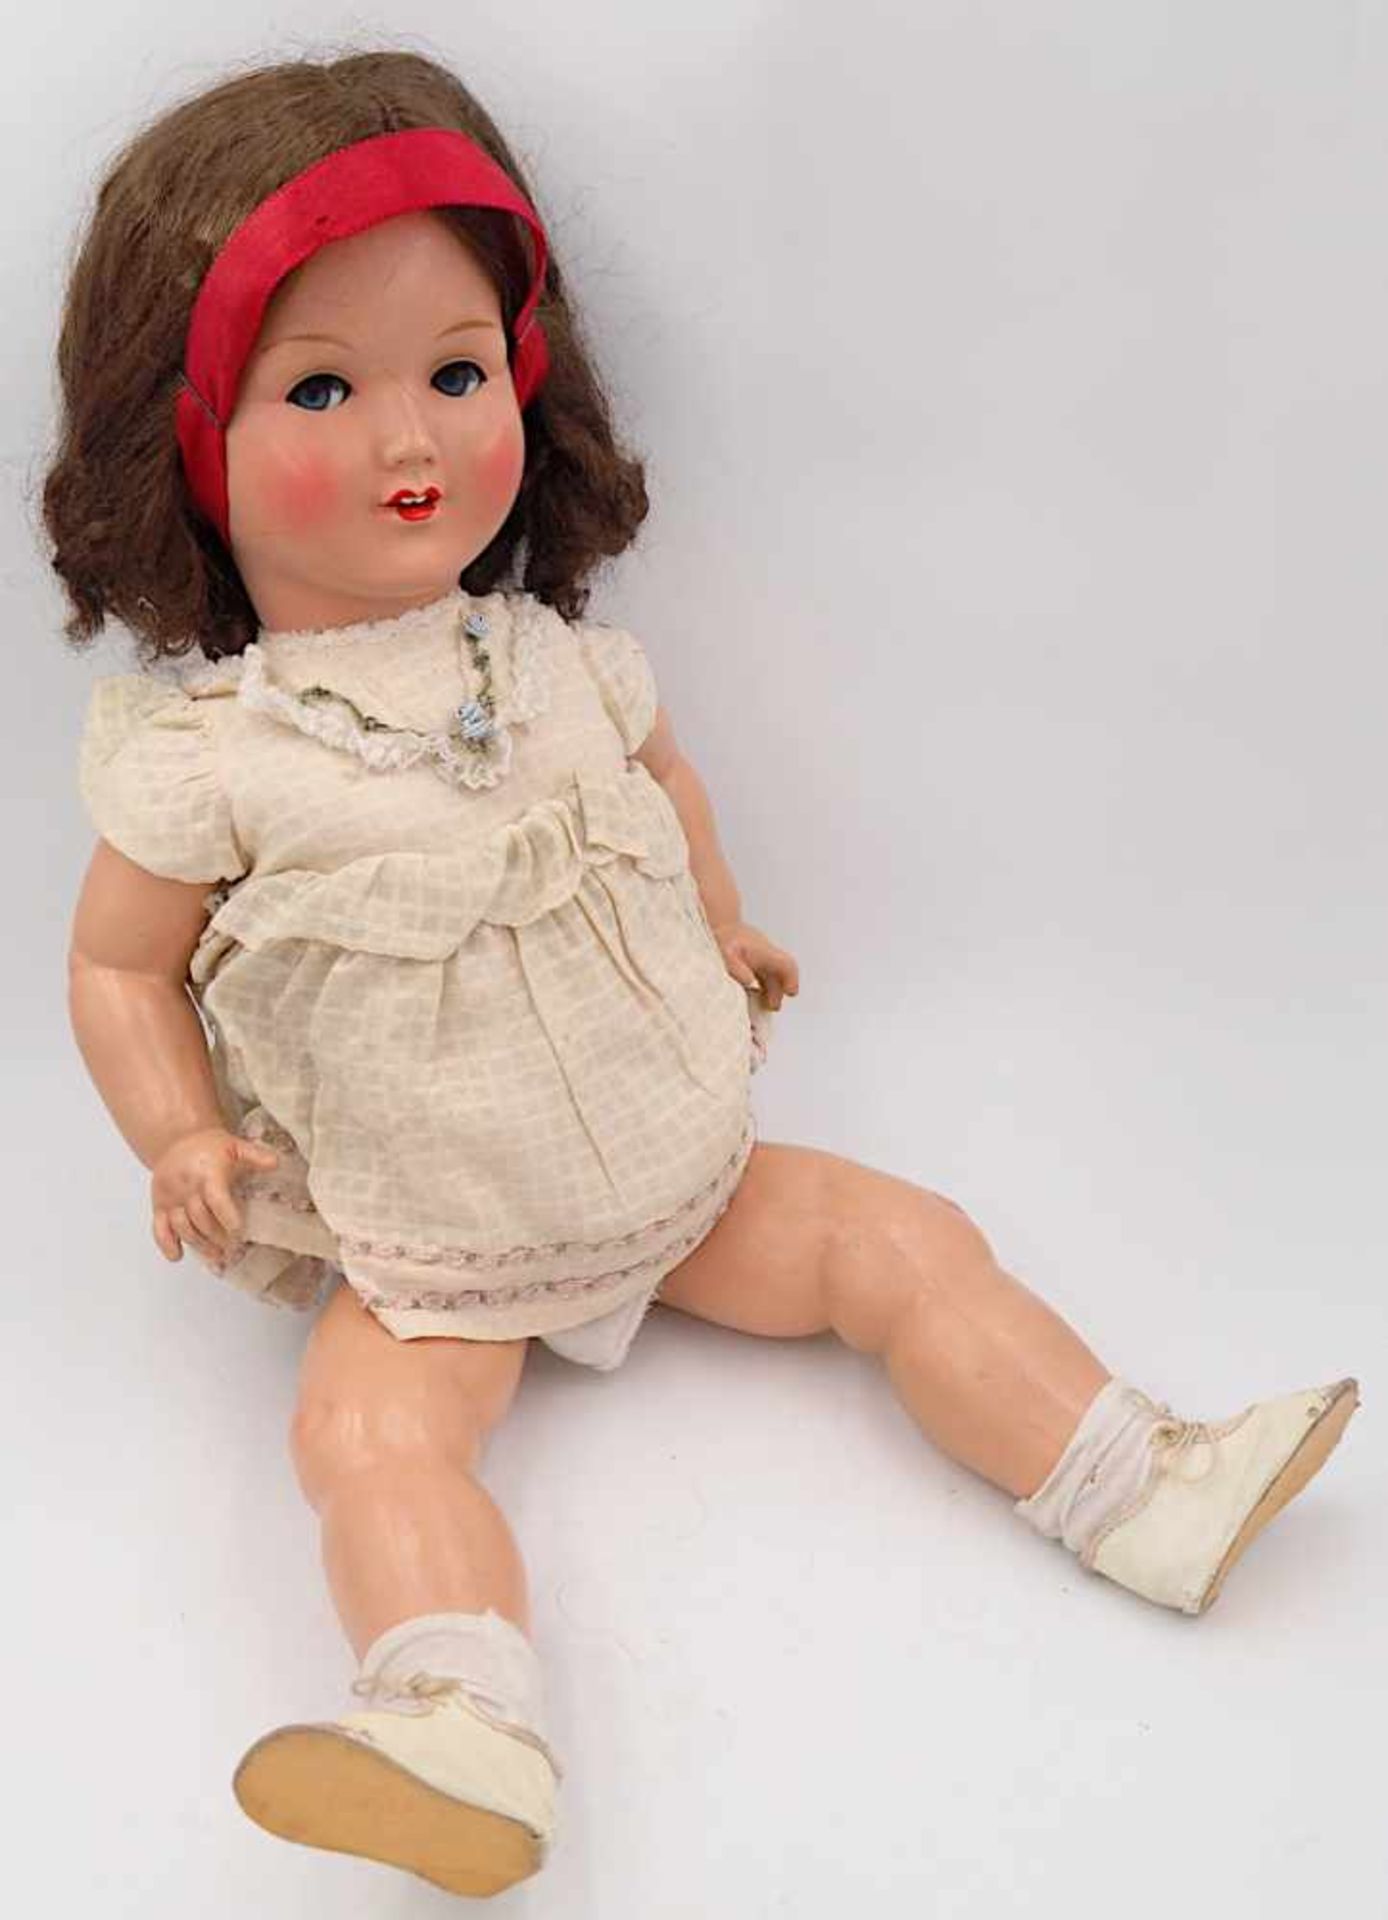 1 Konv. Puppen Celluloid 1960er/1970er Jahre SCHILDKRÖT u.a.versch. Gr. m. Bekleidung - Bild 3 aus 3